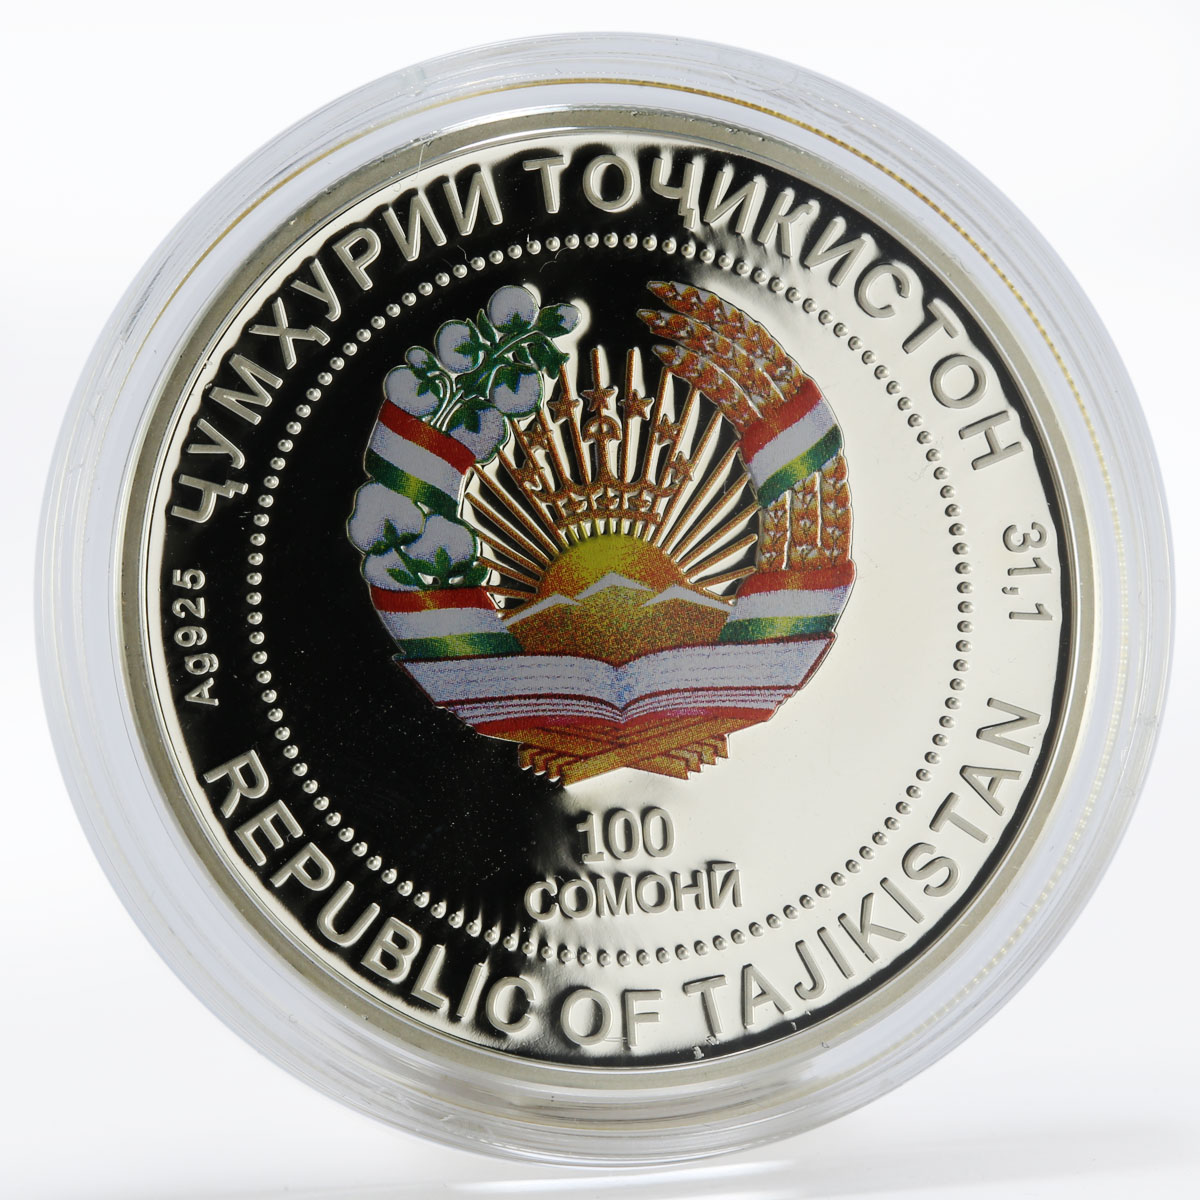 Tajikistan 100 somoni 3000 Years Hisor silver proof coin 2015